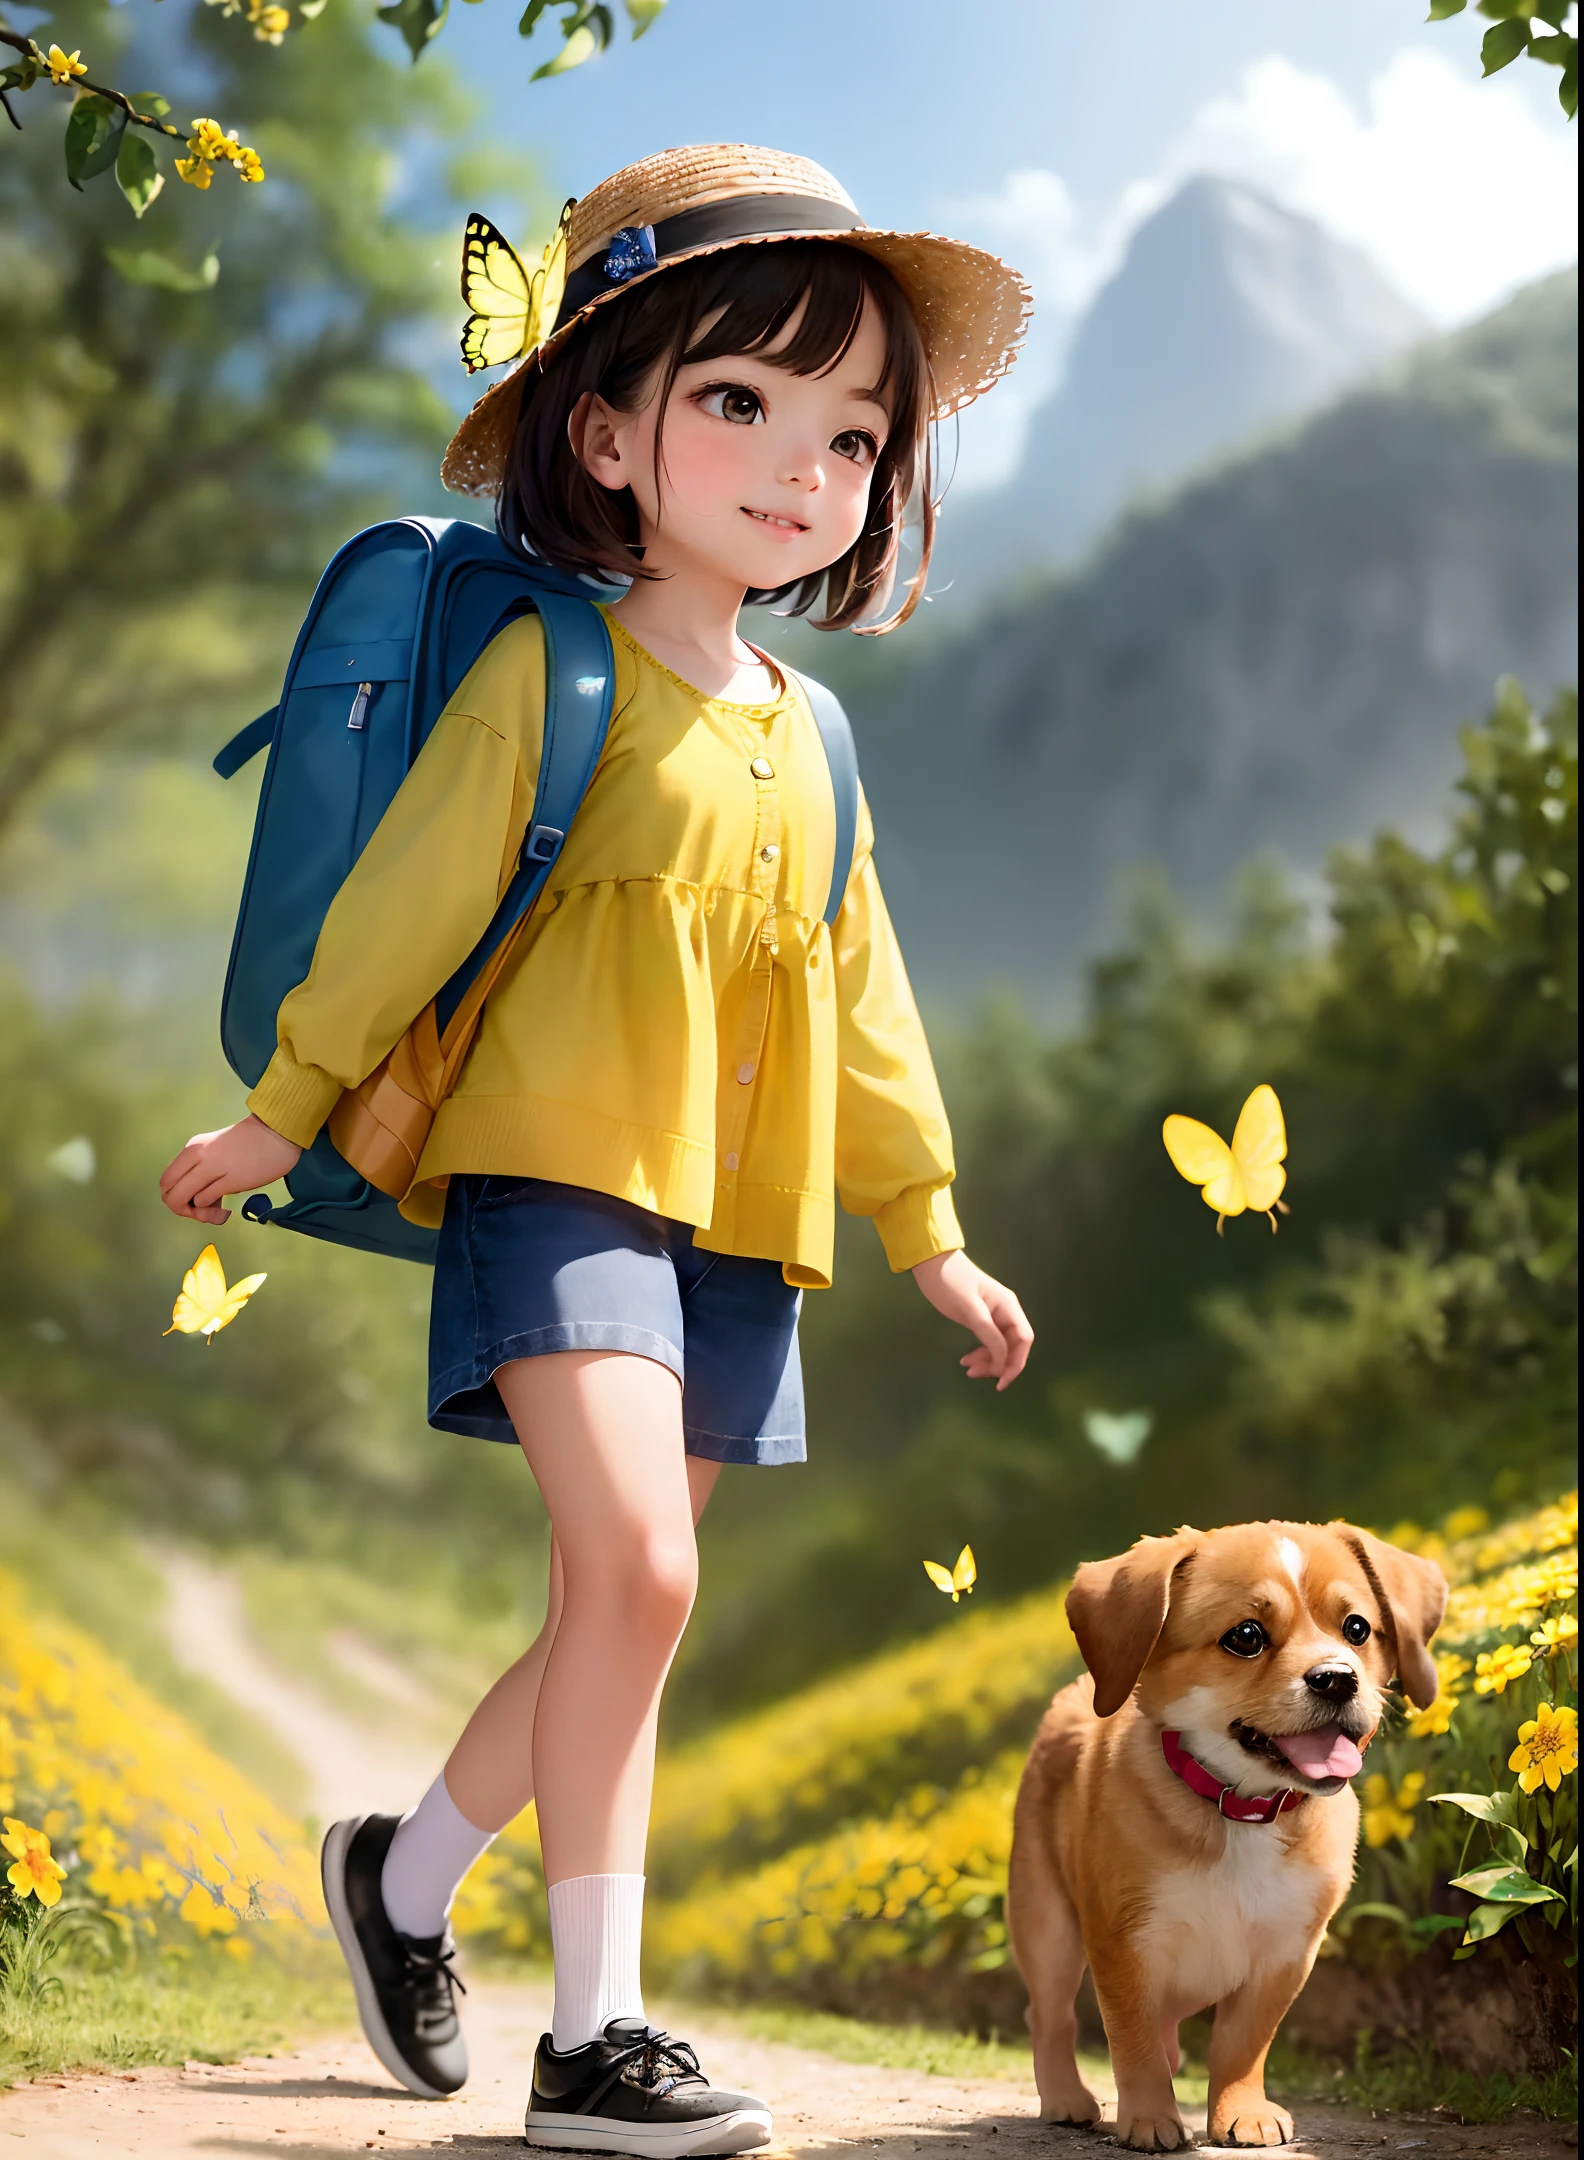 背着背包的迷人, 和她可爱的小狗一起, 享受美好的春游，周围有美丽的黄色花朵和自然风光. 该插图为 4k 分辨率的高清插图, 具有高度详细的面部特征和卡通风格的视觉效果, (蝴蝶舞)